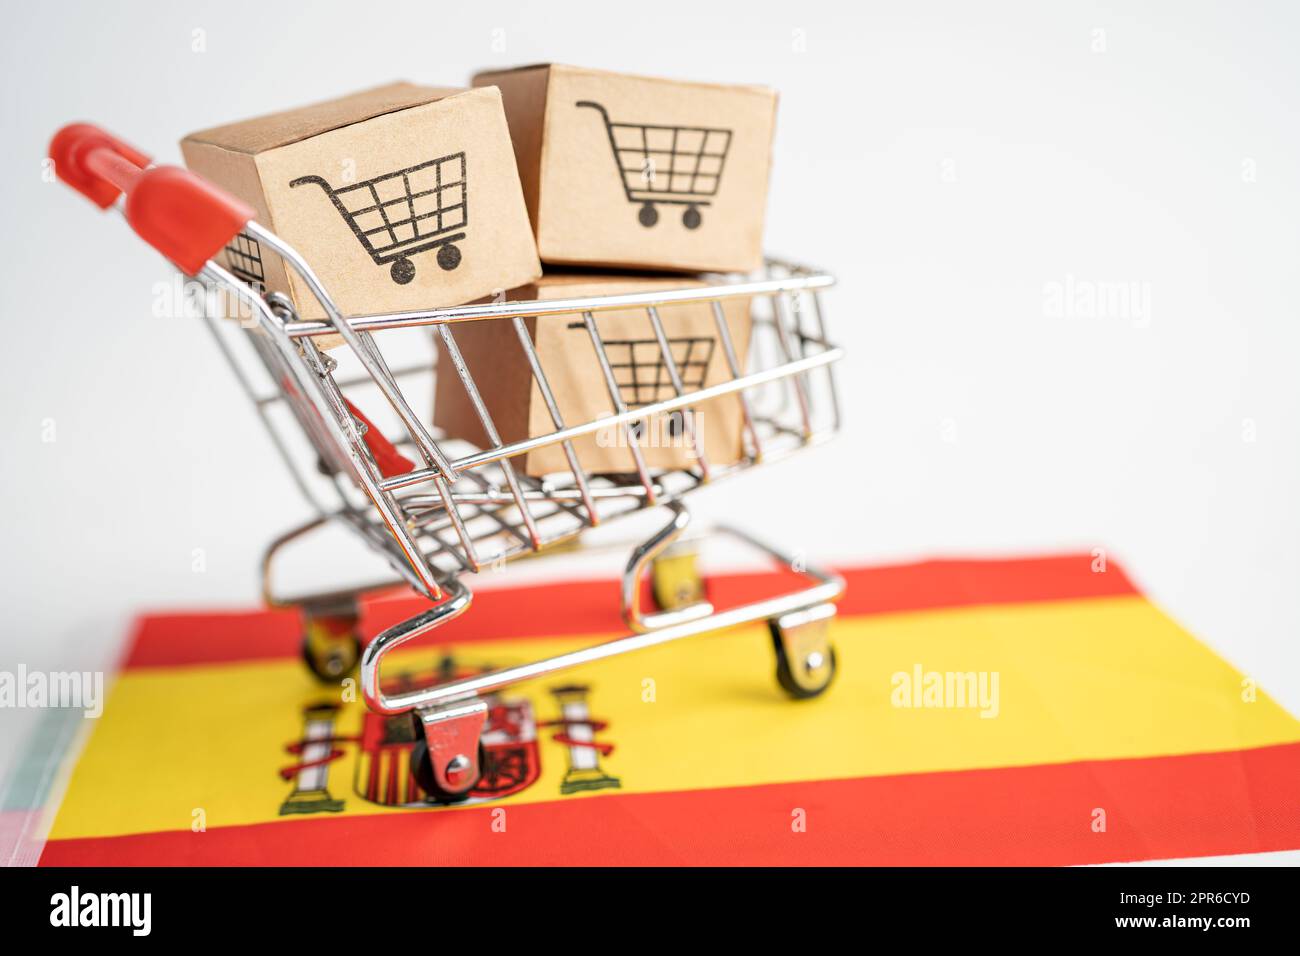 Box mit Warenkorb-Logo und spanischer Flagge, Import Export Online Shopping oder eCommerce Finanzen Lieferung Lieferung Shop Produktversand, Handel, Lieferantenkonzept. Stockfoto